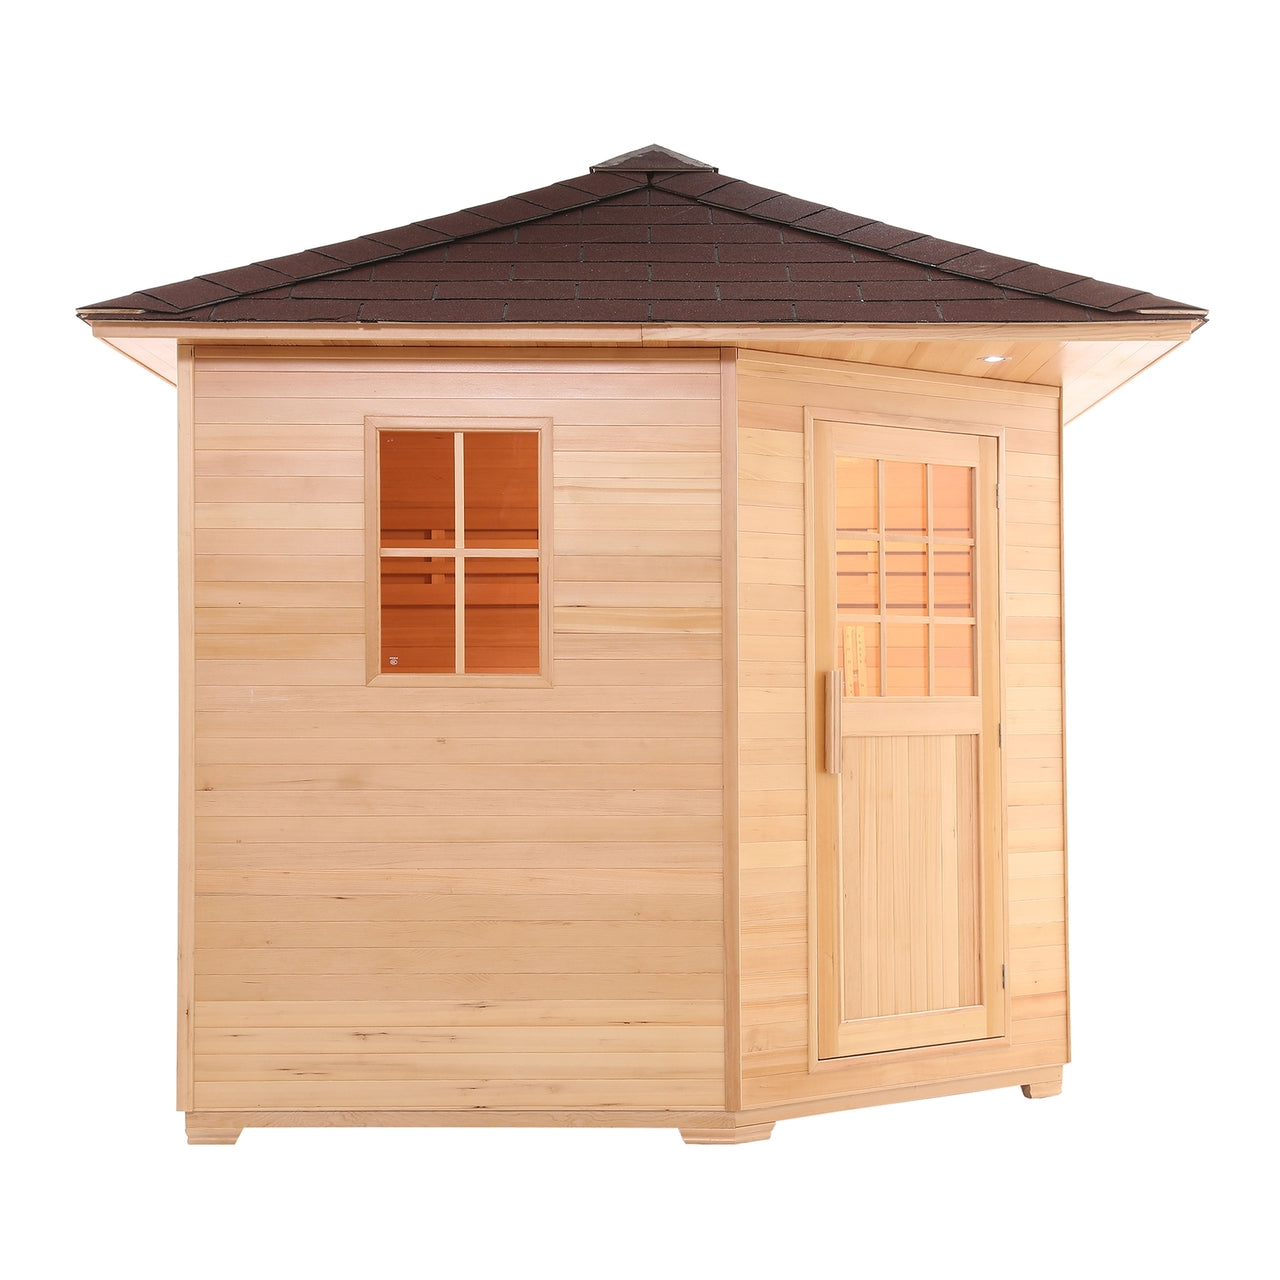 Aleko Canadian Hemlock Wet Dry Outdoor Sauna with Asphalt Roof - 9 kW ETL Certified Heater - 8 Person